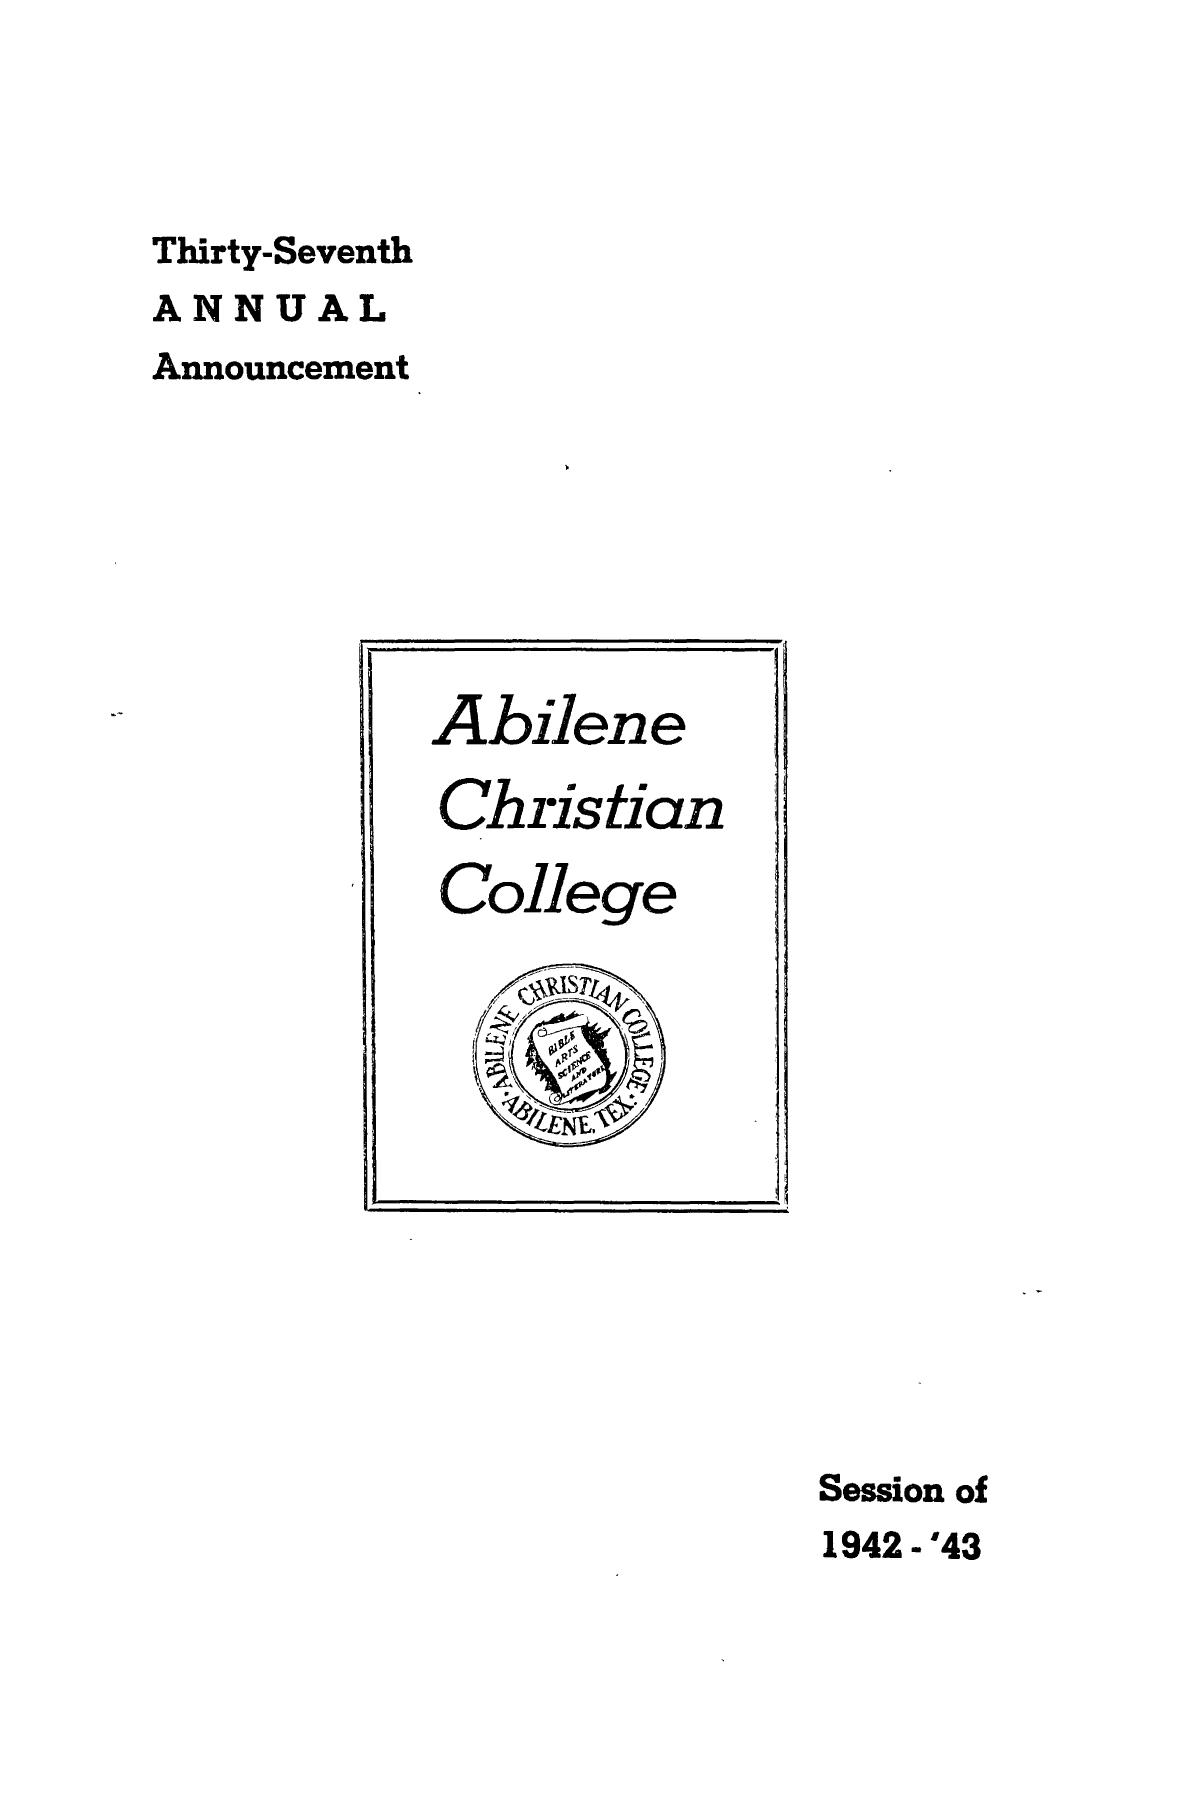 Catalog of Abilene Christian College, 1942-1943
                                                
                                                    1
                                                